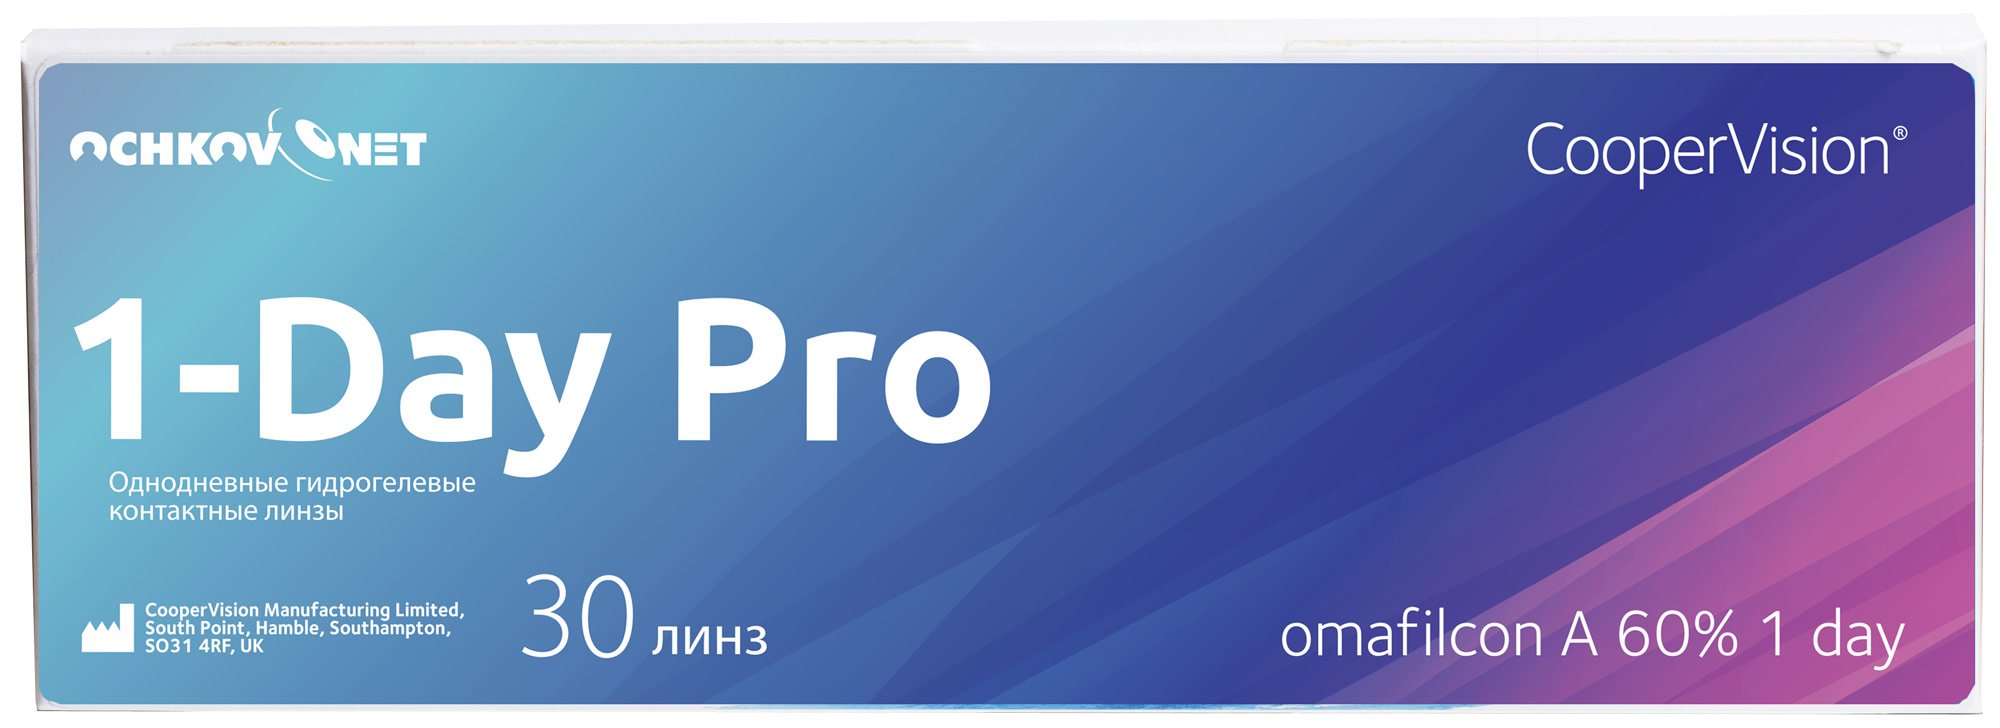 Контактные линзы Ochkov.Net 1-Day Pro 30 линз 8.7, -4.25  - купить со скидкой